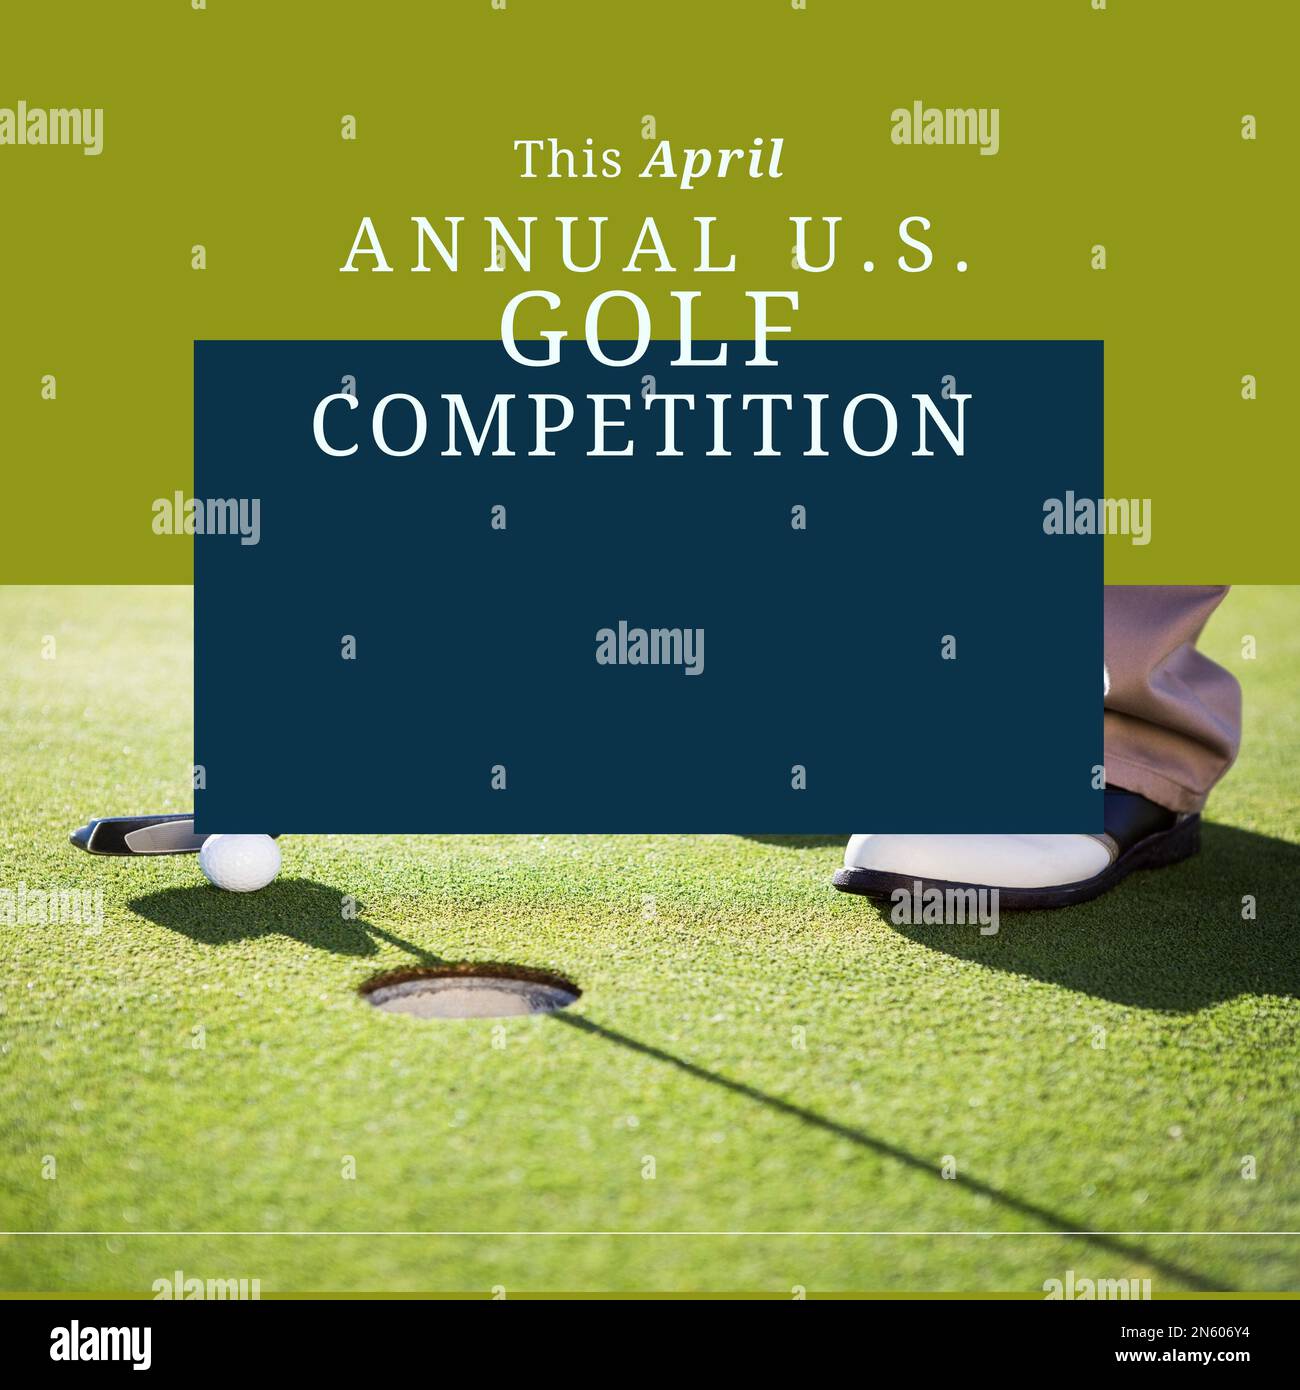 Komposition des jährlichen US-Golfwettbewerbs Text, Golfspieler und Kopierbereich auf grünem Hintergrund Stockfoto